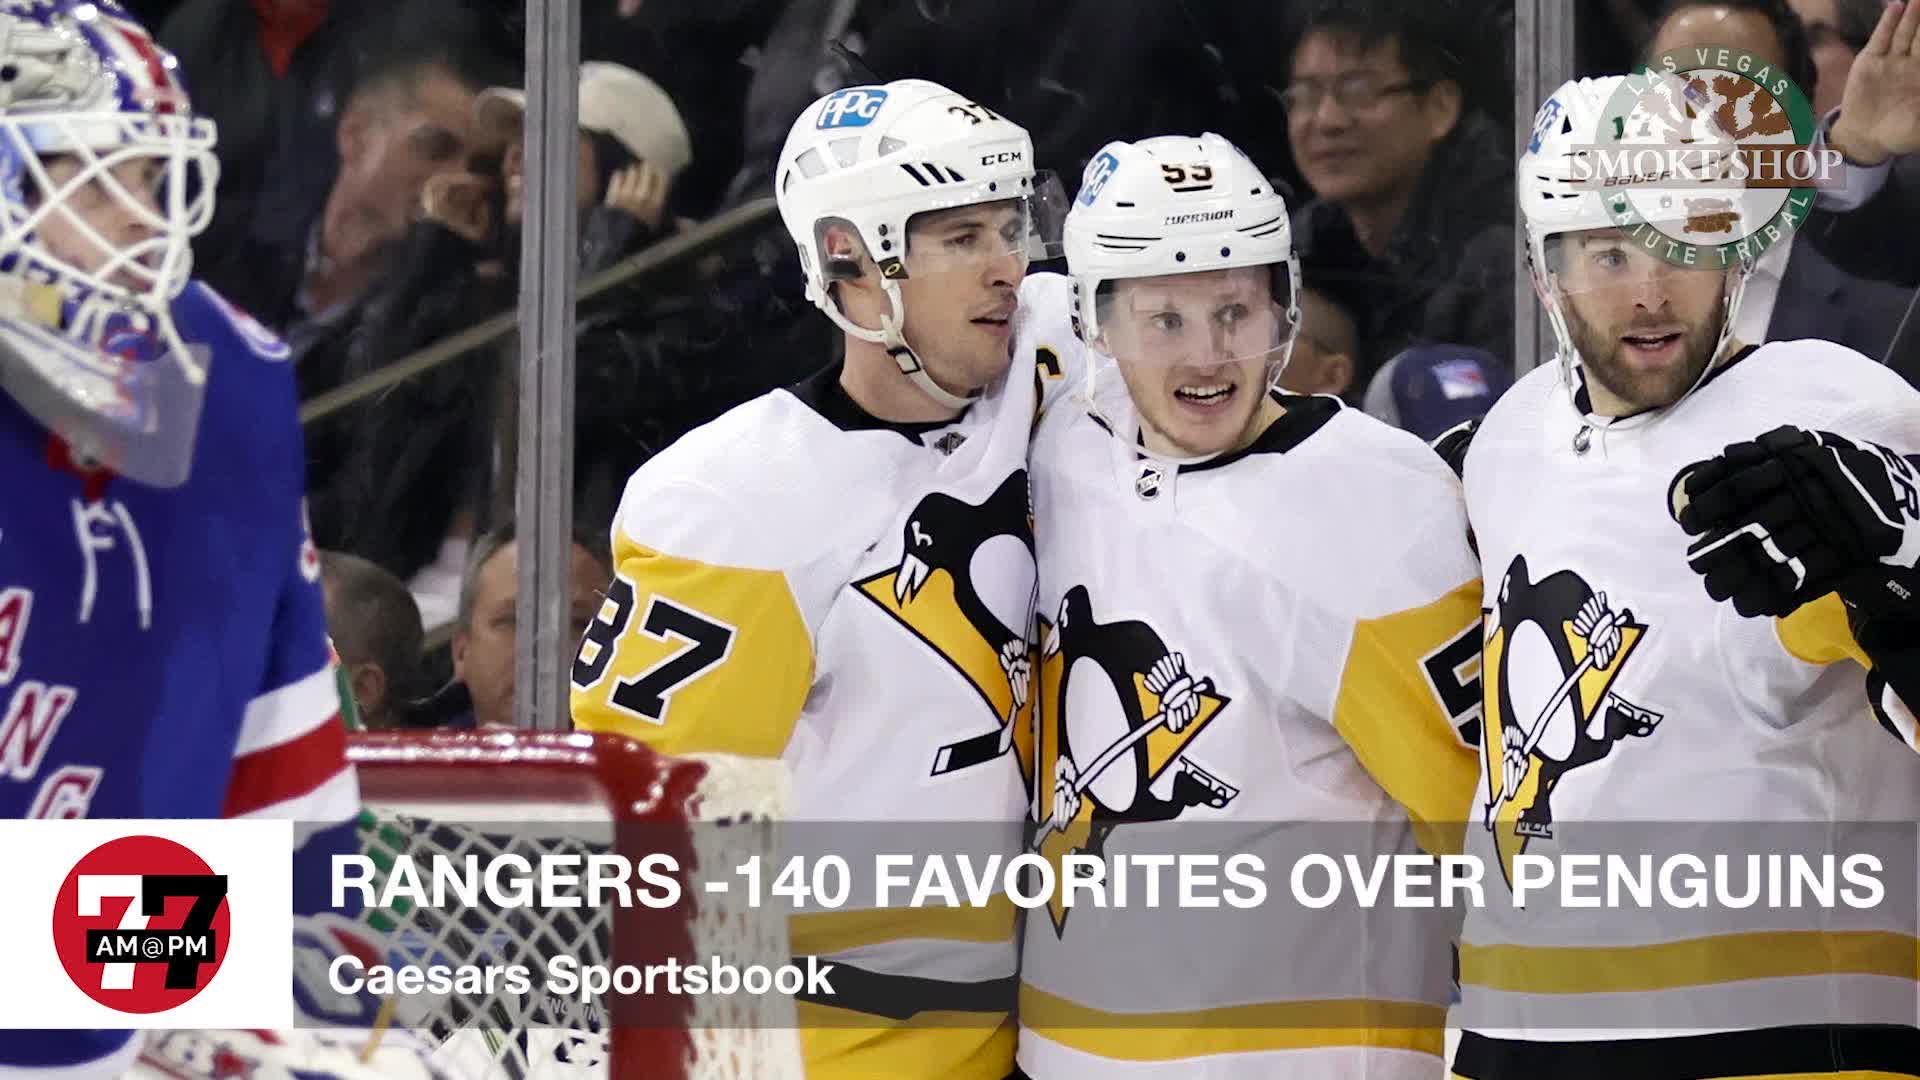 Ranger -140 Favorites over Penguins